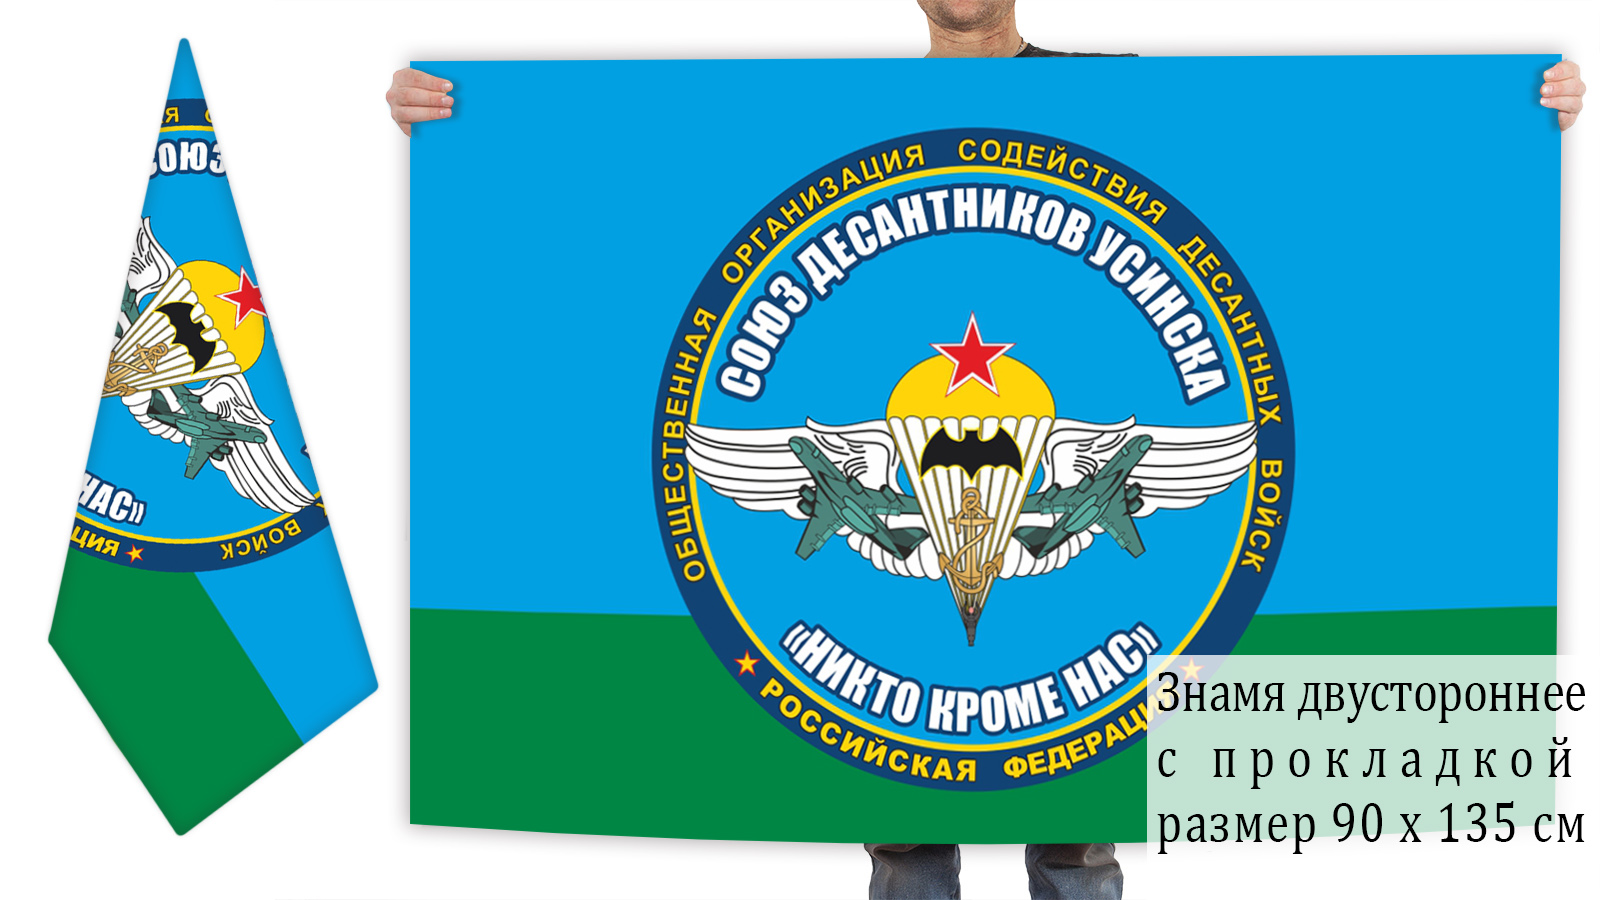 Двусторонний флаг Союза Десантников Усинска